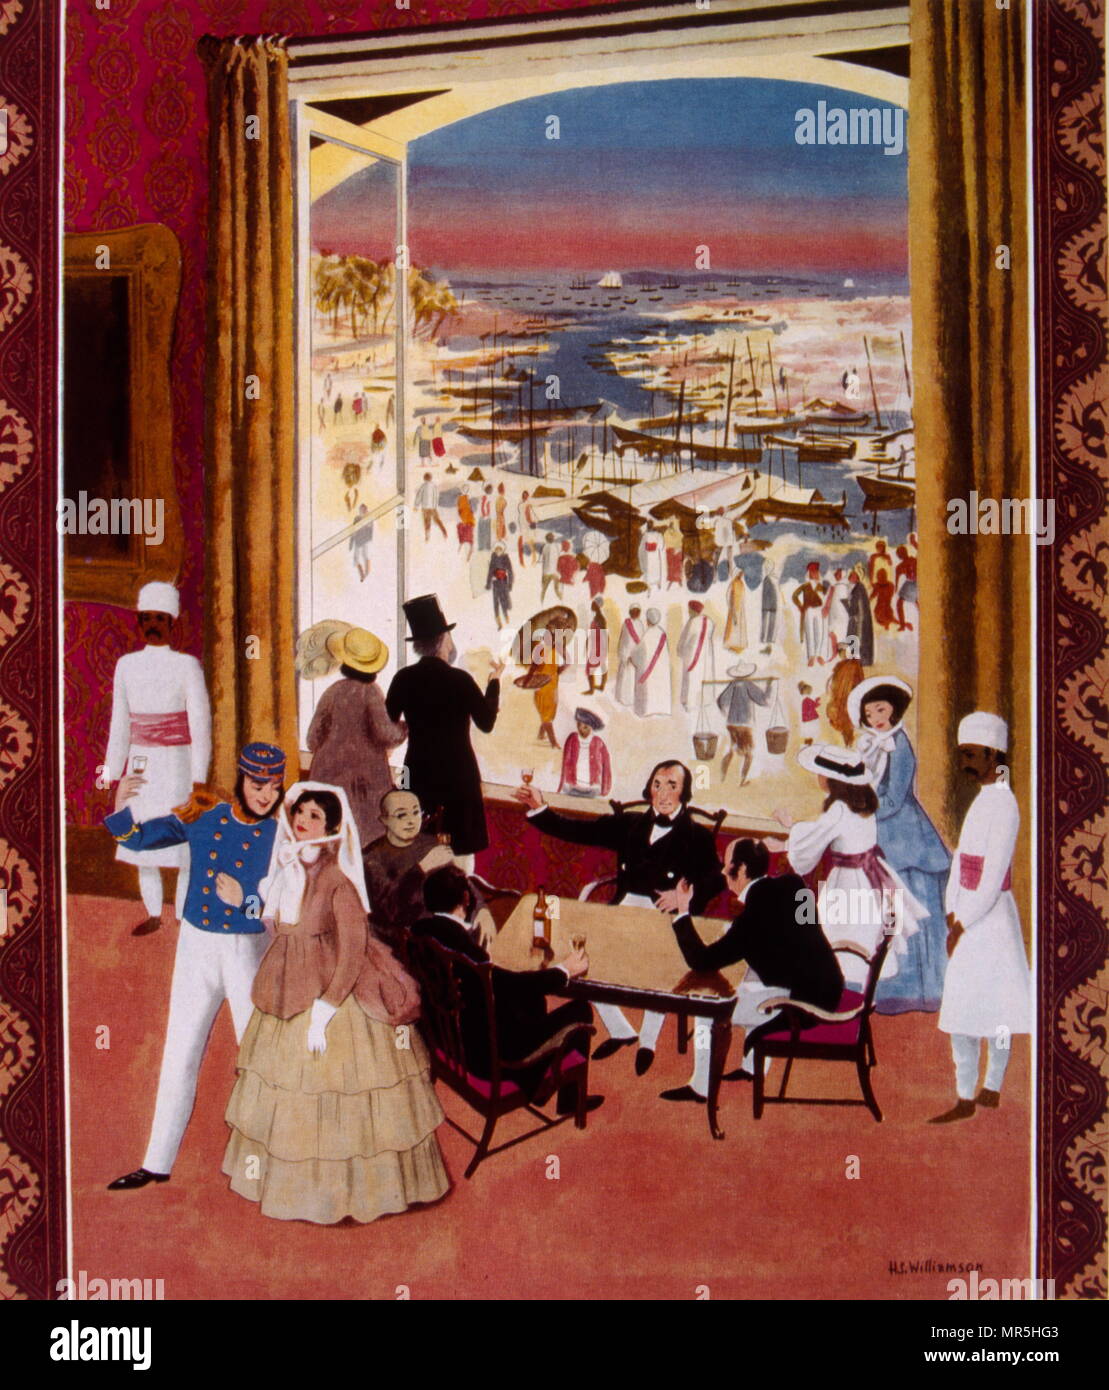 Illustration représentant le commerce colonial britannique et présence à Singapour au milieu du xixe siècle. Cognac Hennessy annonce, 1938 Banque D'Images